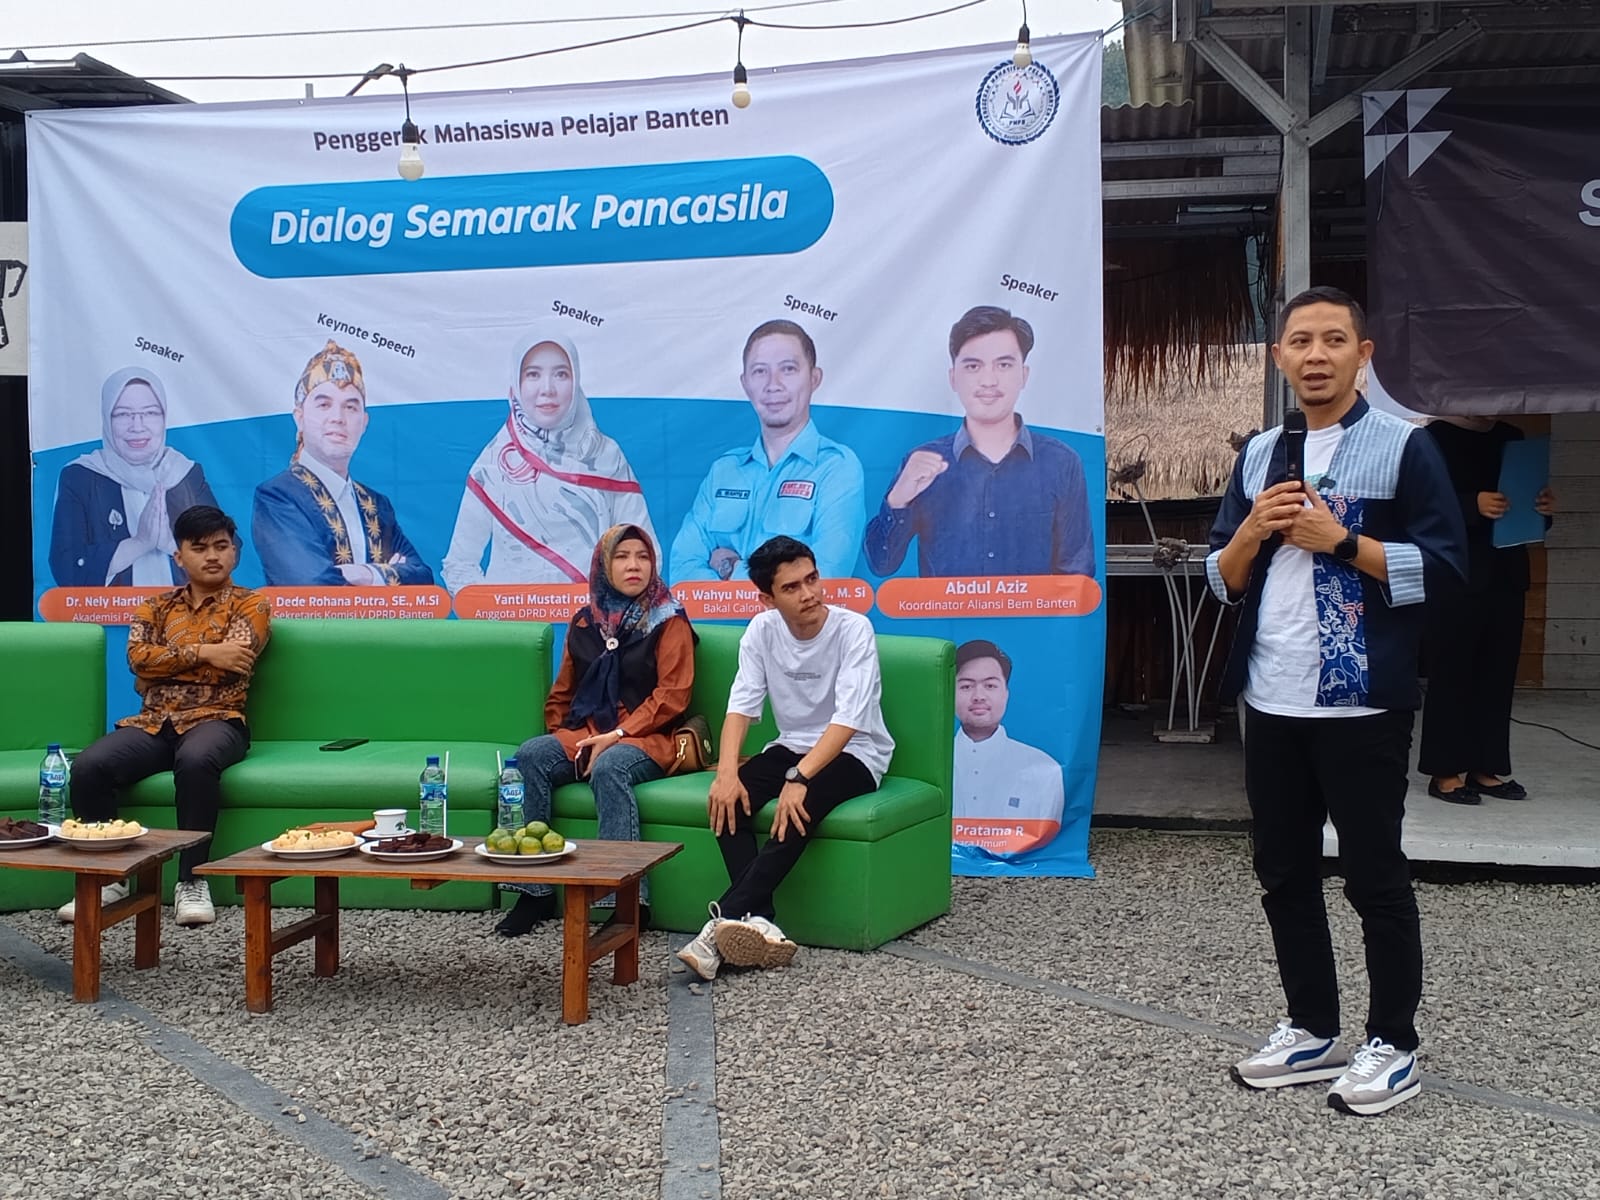 Hadir Pada Dialog Peringatan Harlah Pancasila, Wahyu Nurjamil Ajak Pemuda Bangun Kota Serang